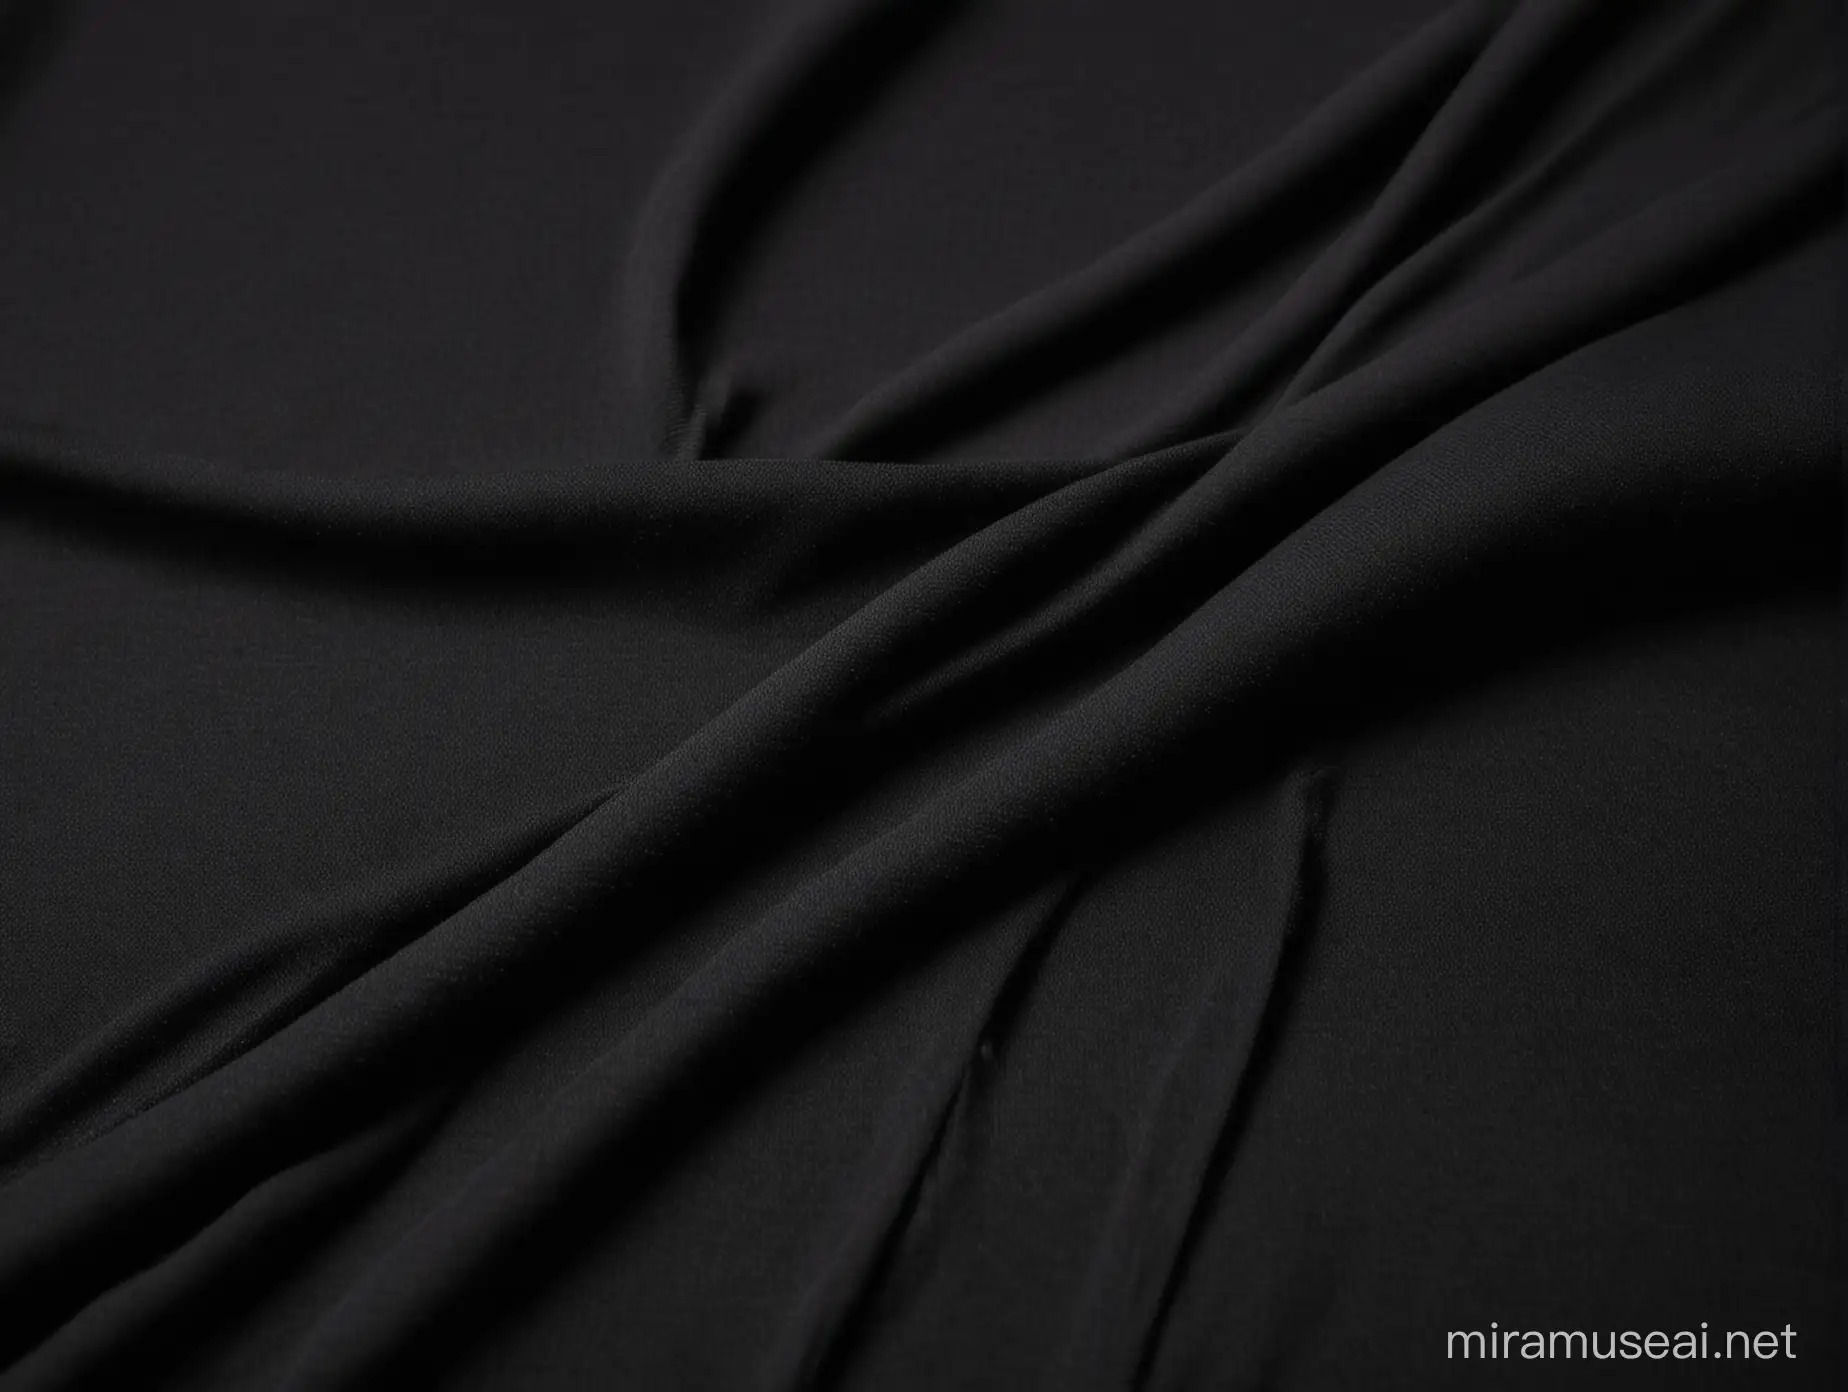 Professional Lighting Enhances Premium Quality Black Knitted TShirt Closeup